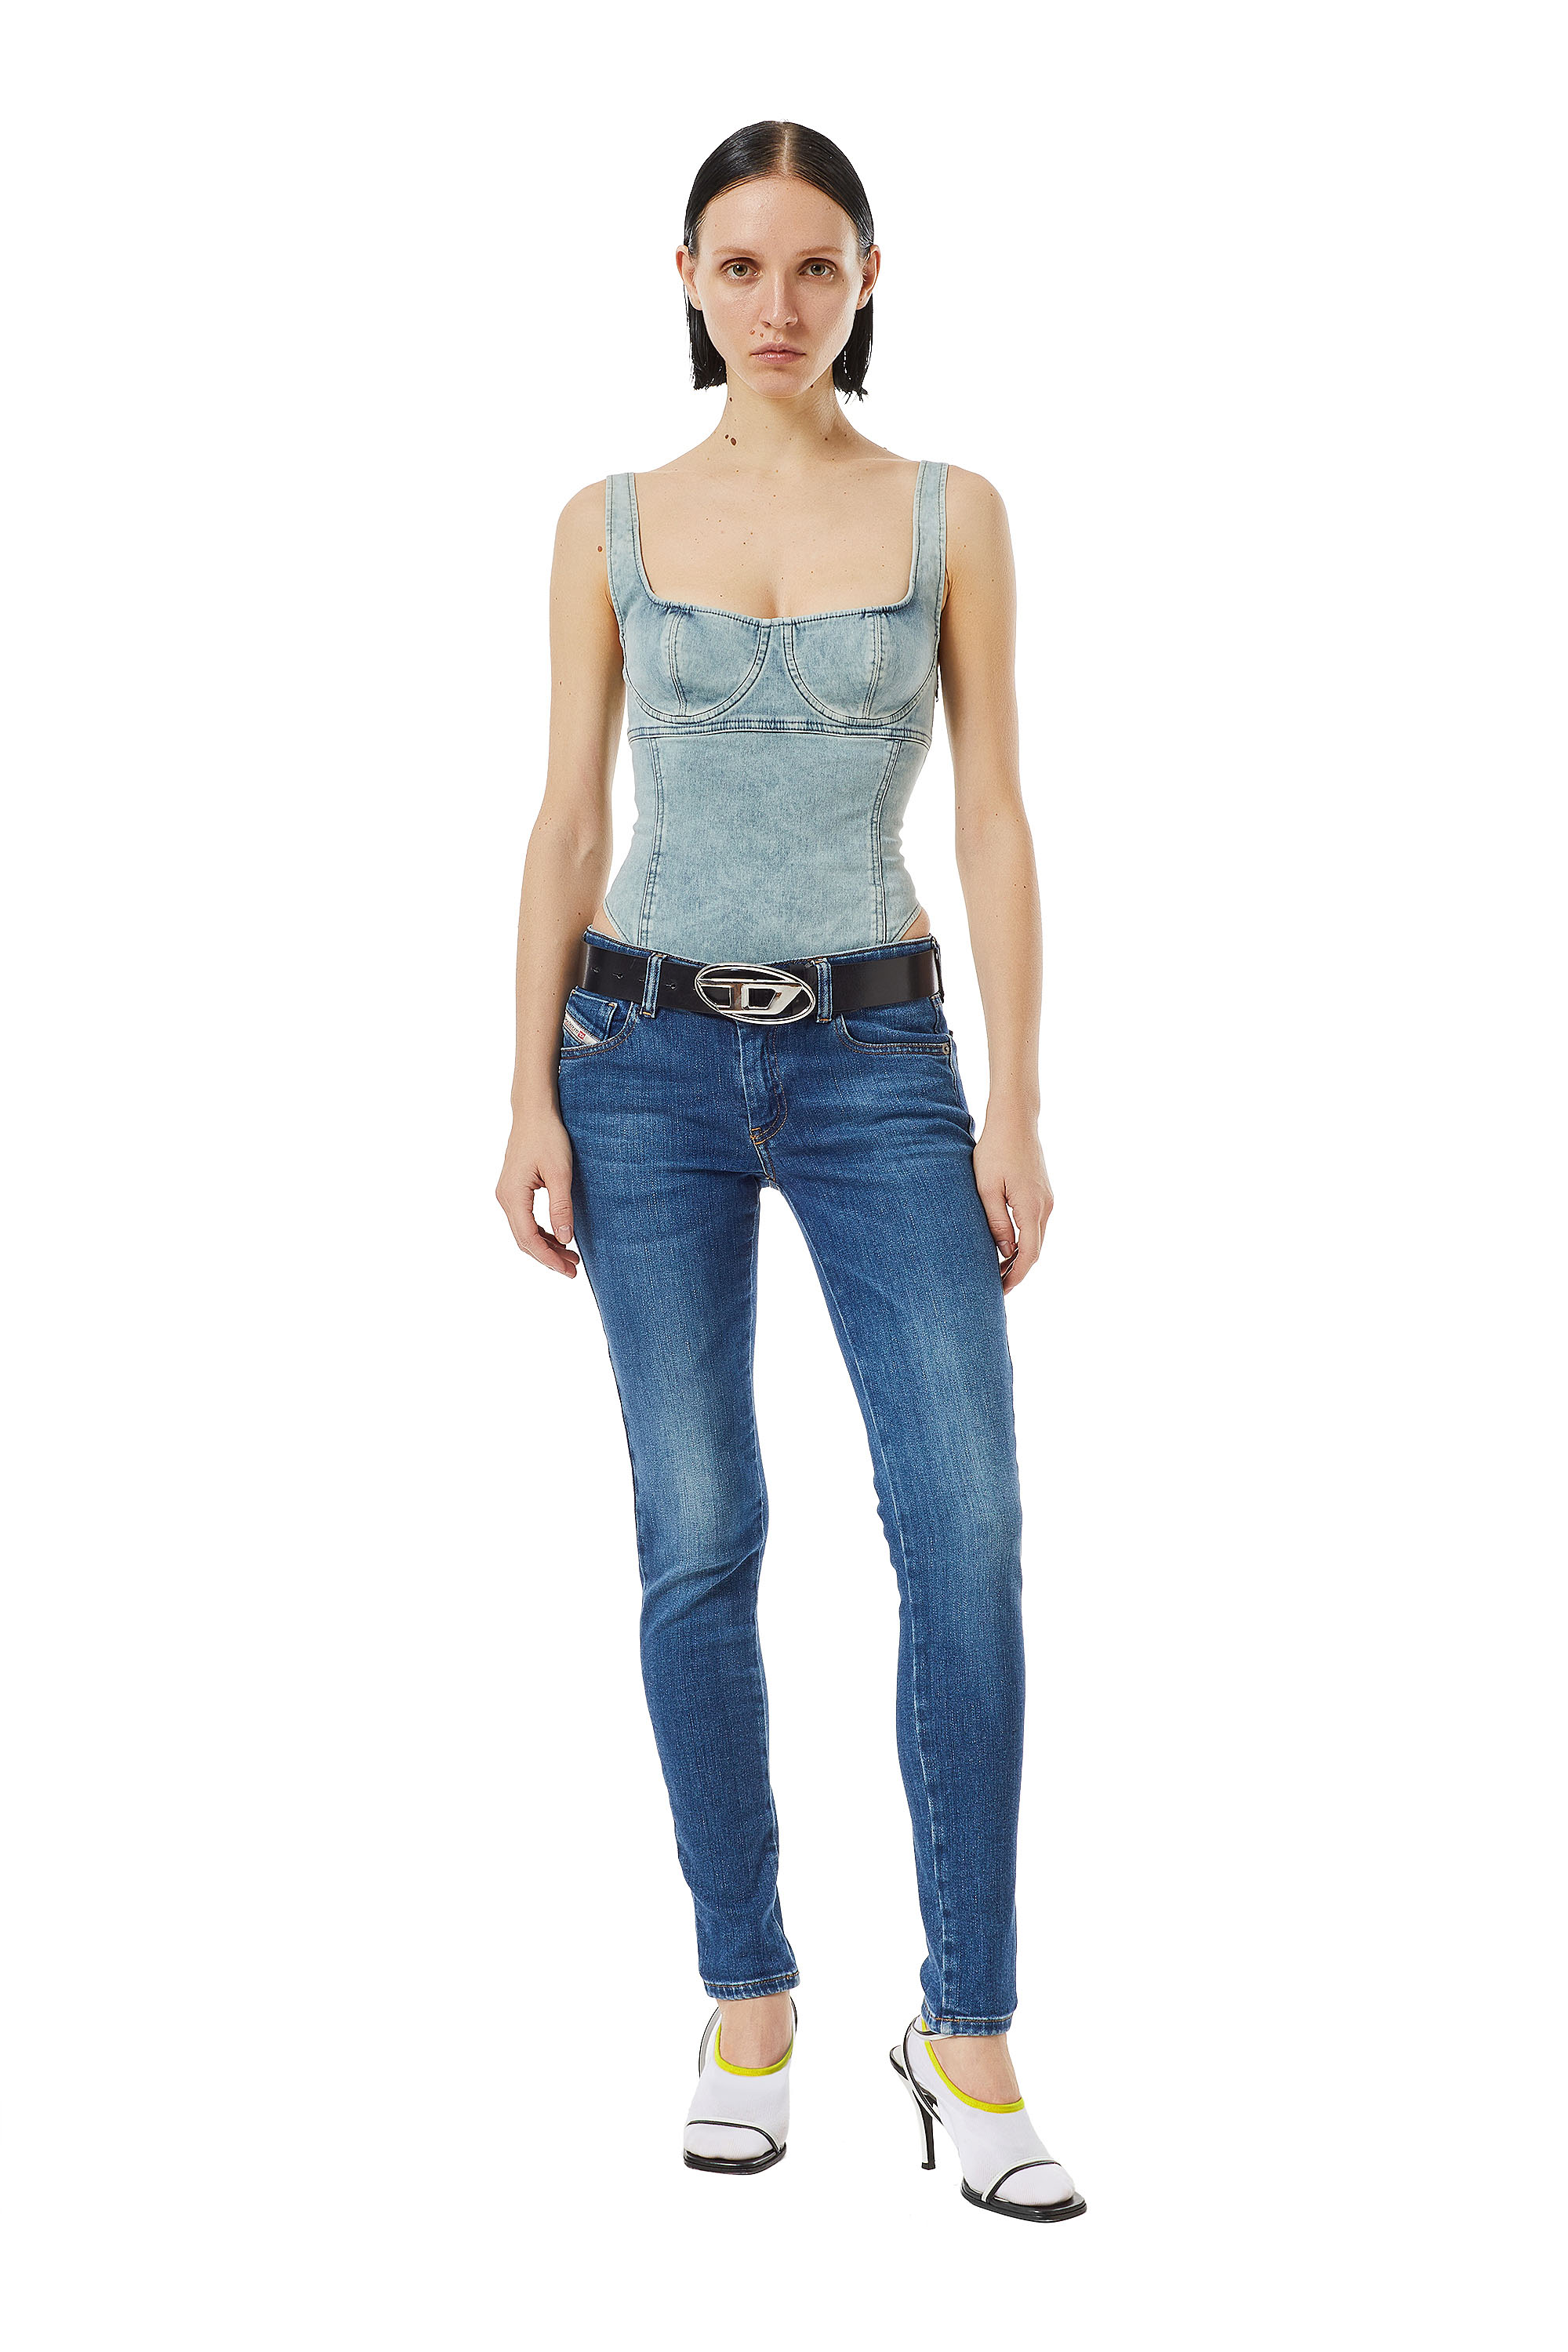 Diesel - Super skinny Jeans 2018 Slandy-Low 09C21, Azul medio - Image 2